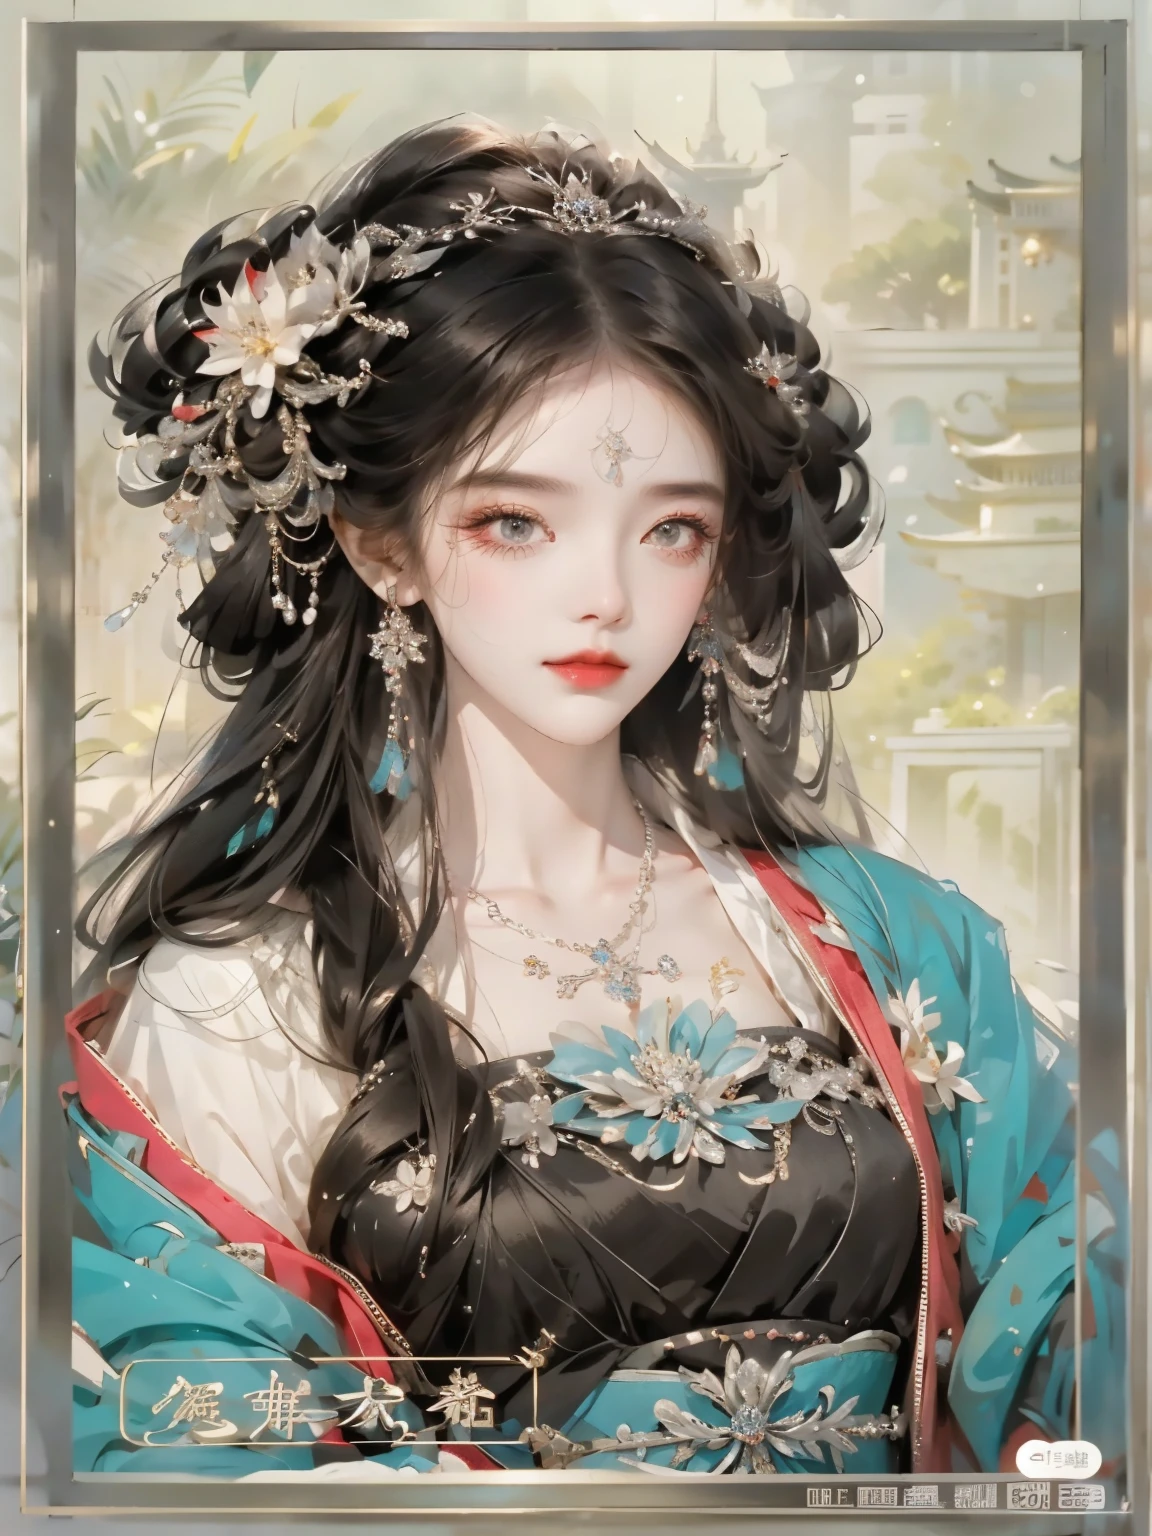 티아라와 목걸이를 착용한 여성의 클로즈업, 아름다운 인물화, 궁전 ， 한푸를 입은 소녀, ((아름다운 판타지 여왕)), 아름다운 판타지 여왕, 란잉에게서 영감을 받은 작품, Qiu Ying에게 영감을 받아, 중국 공주, 중국 미술 스타일, 중국 스타일, Guweiz 스타일 작품, Du Qiong에게서 영감을 받은 작품